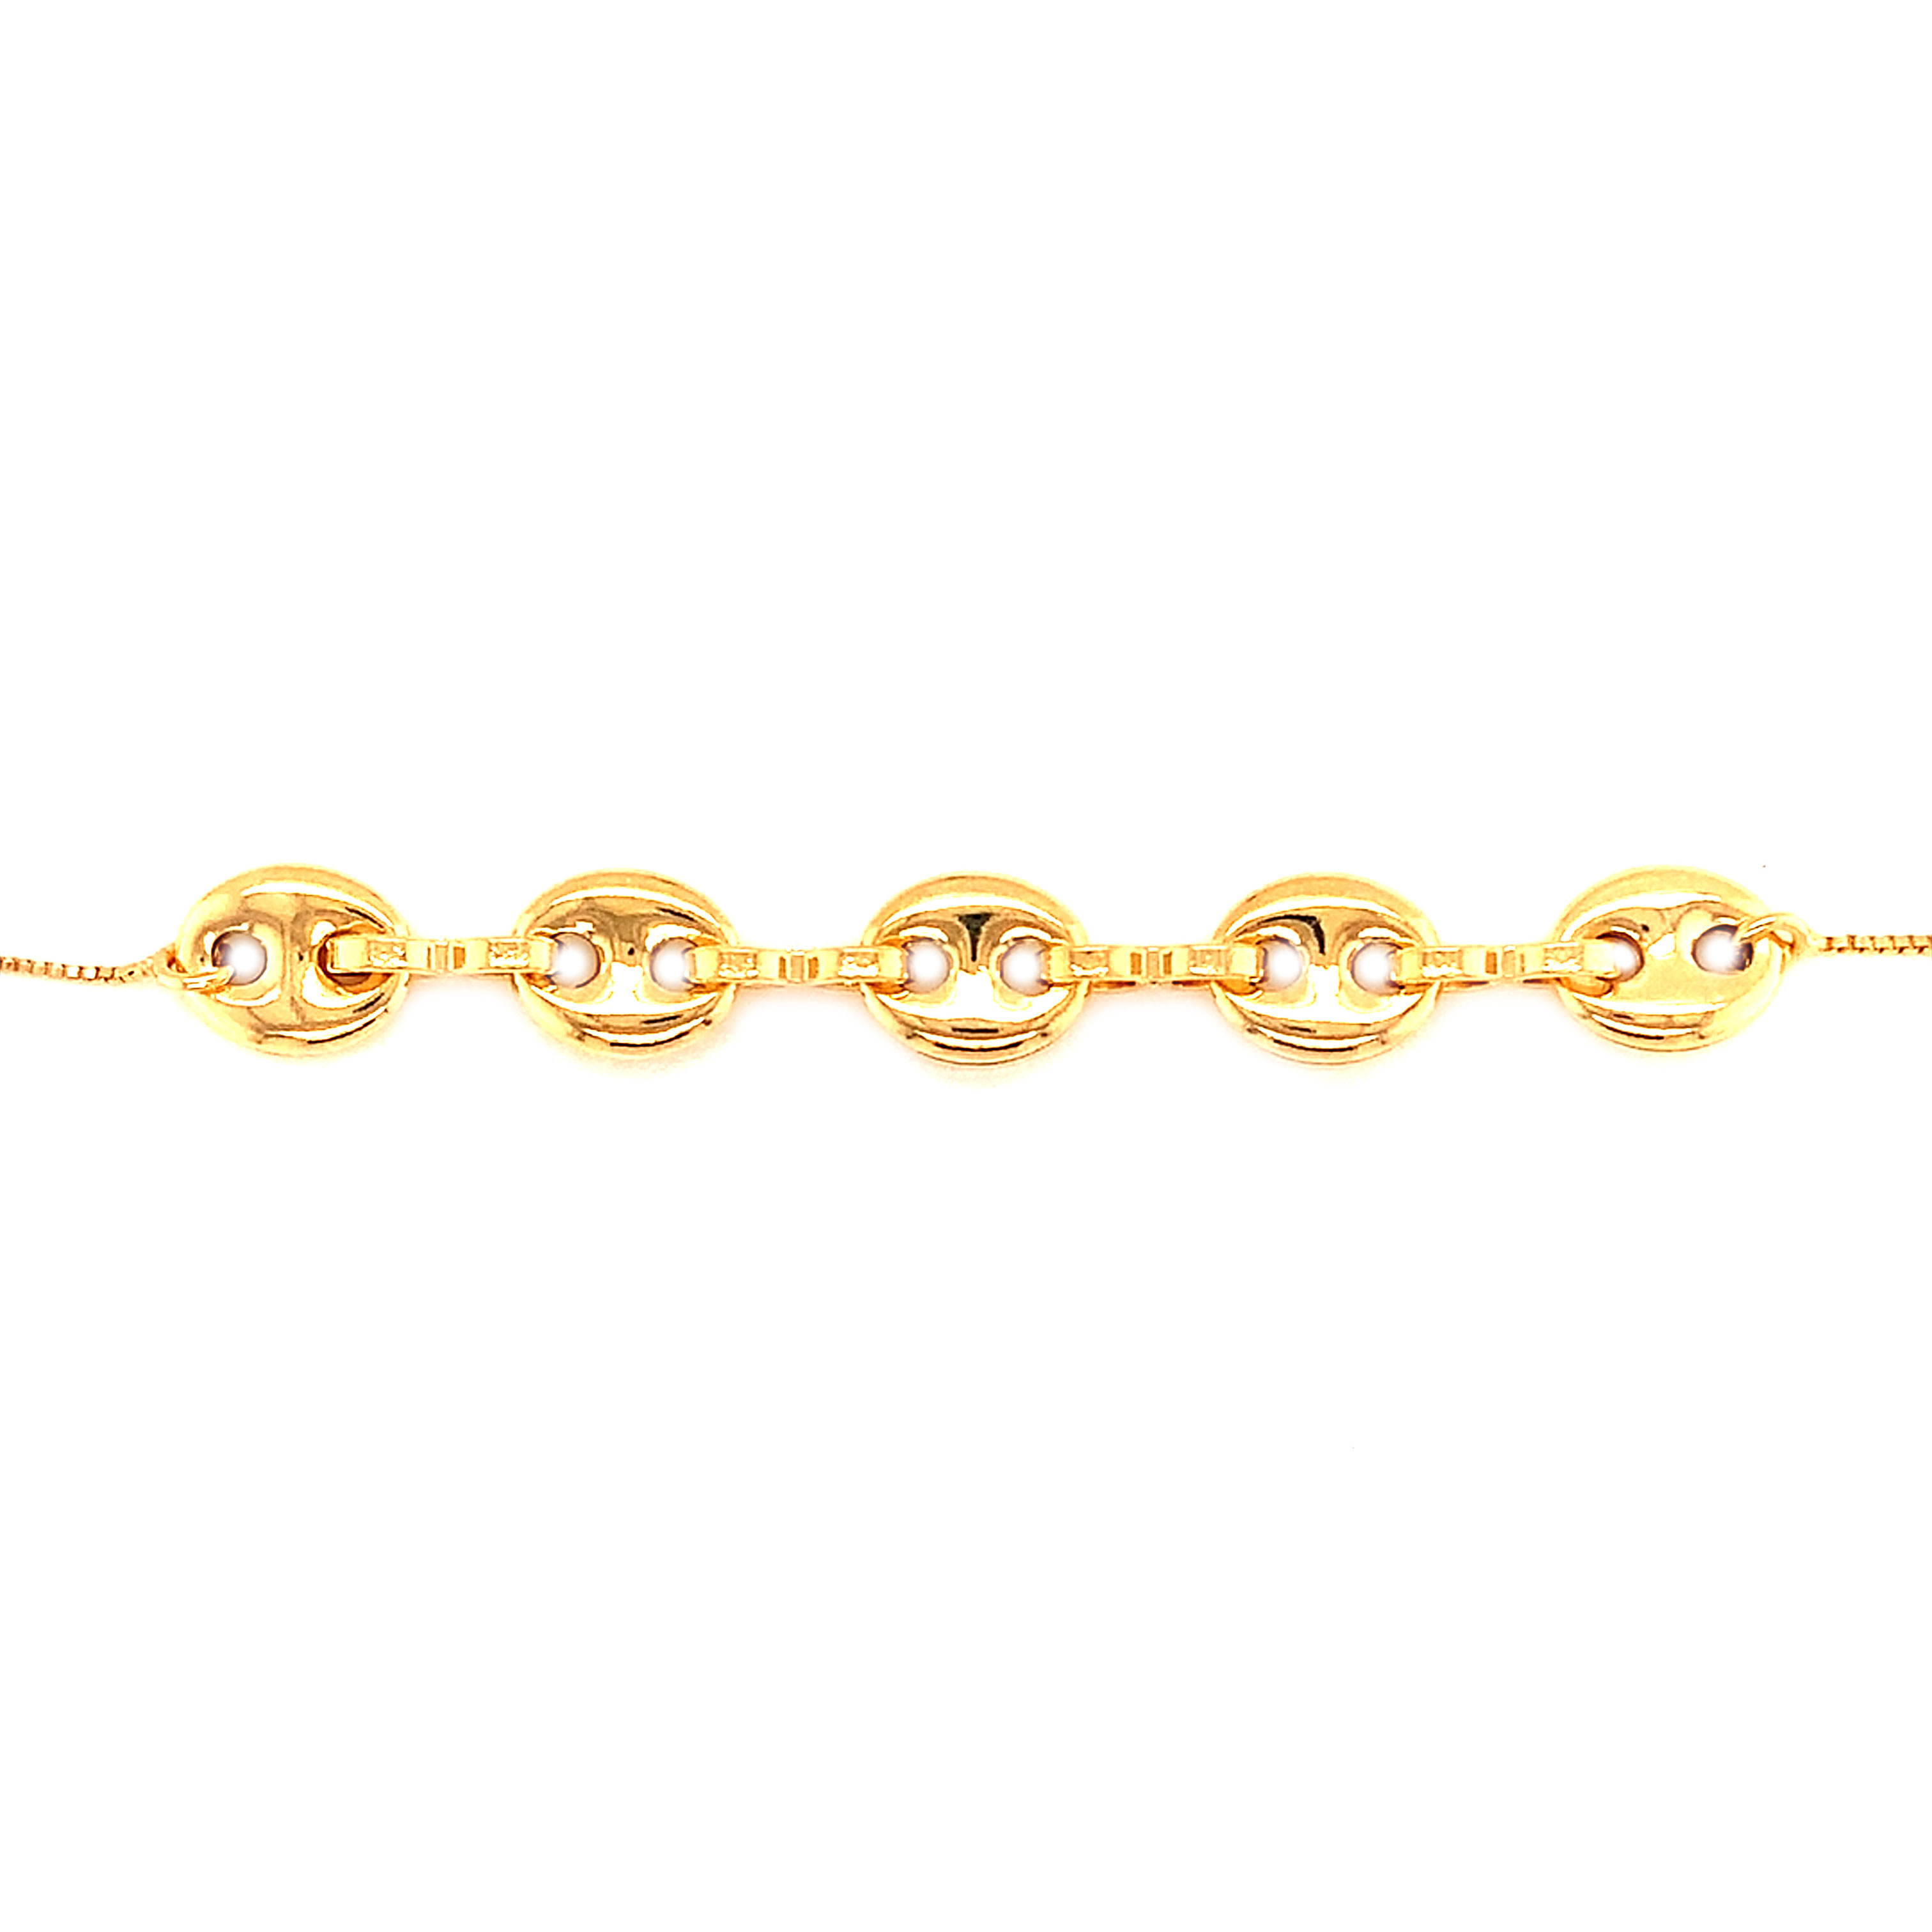 Gucci Link Bracelet - Gold Filled